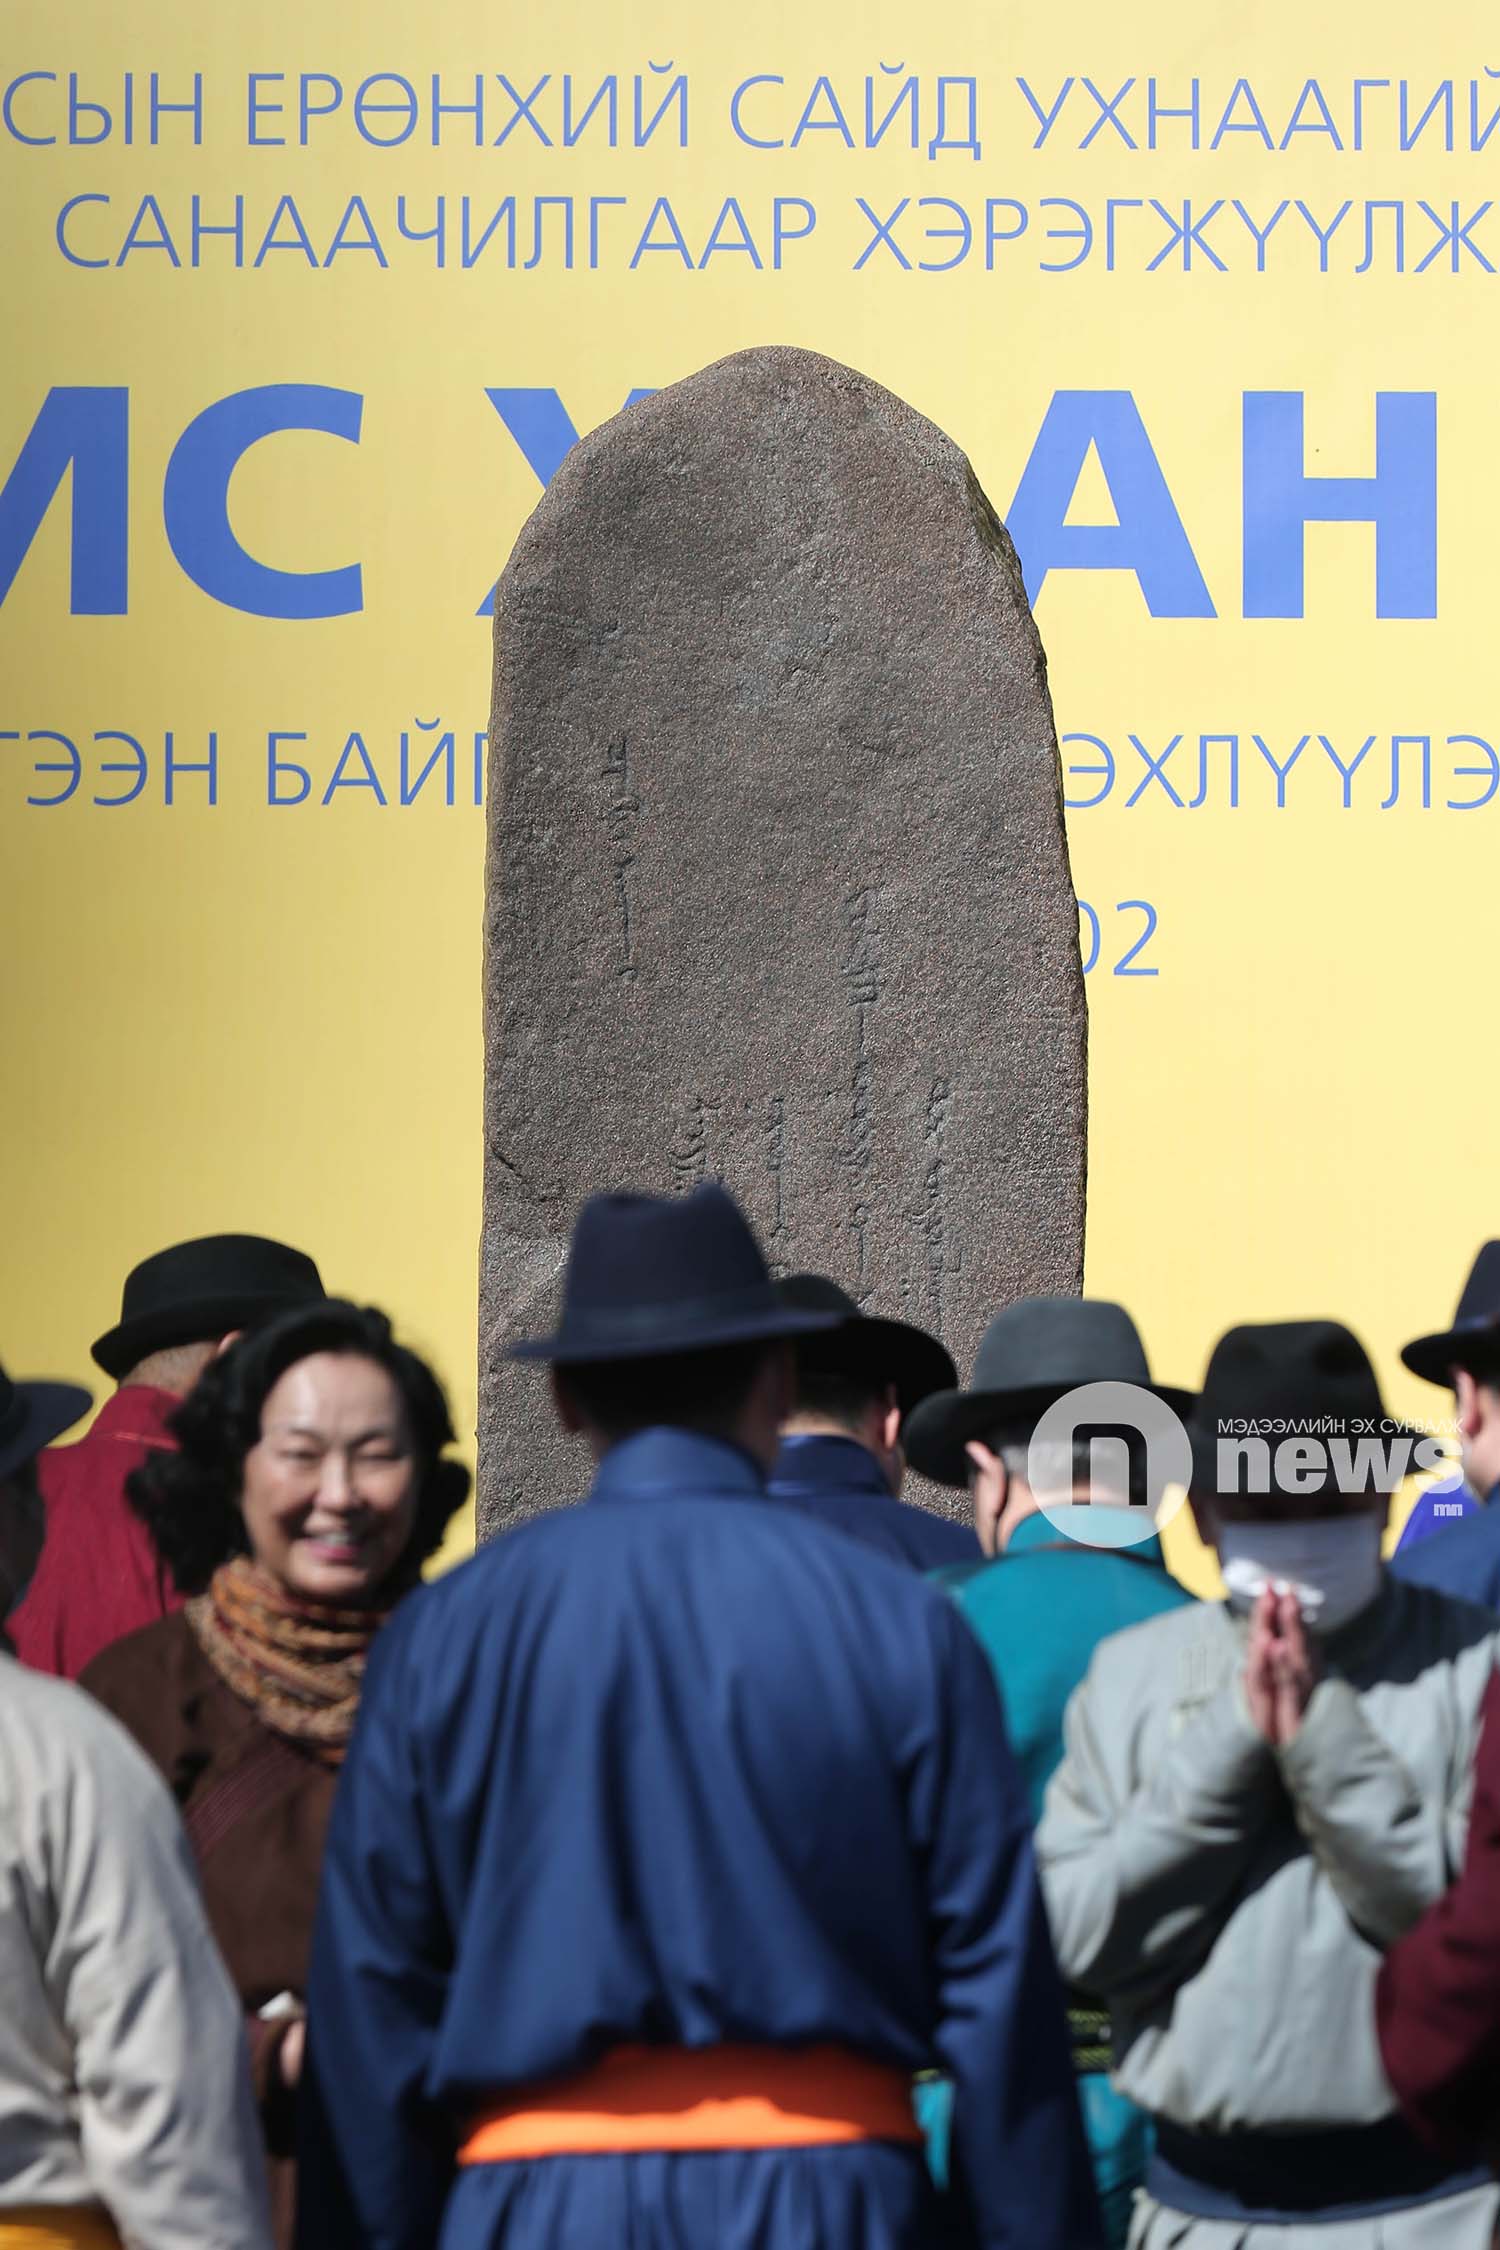 Чингис хаан музей шав тавих ёслол (5)